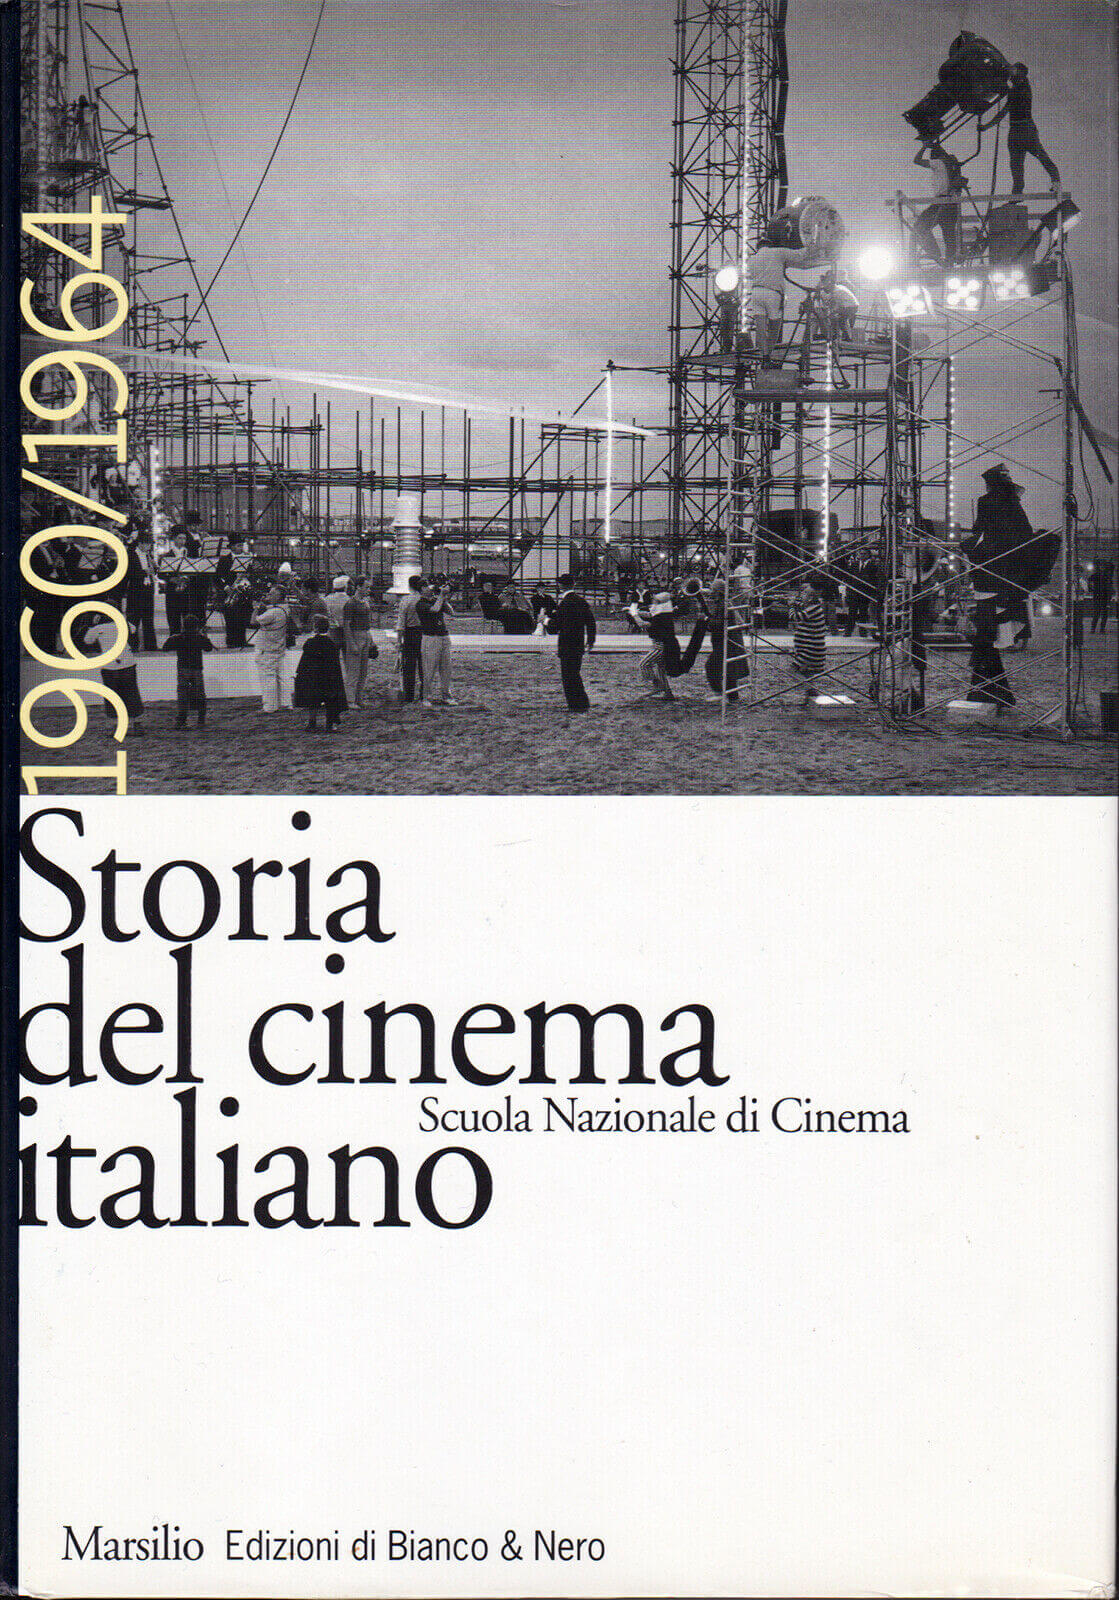 Storia del cinema italiano volume X - 1960-1964 - Centro Sperimentale di  Cinematografia